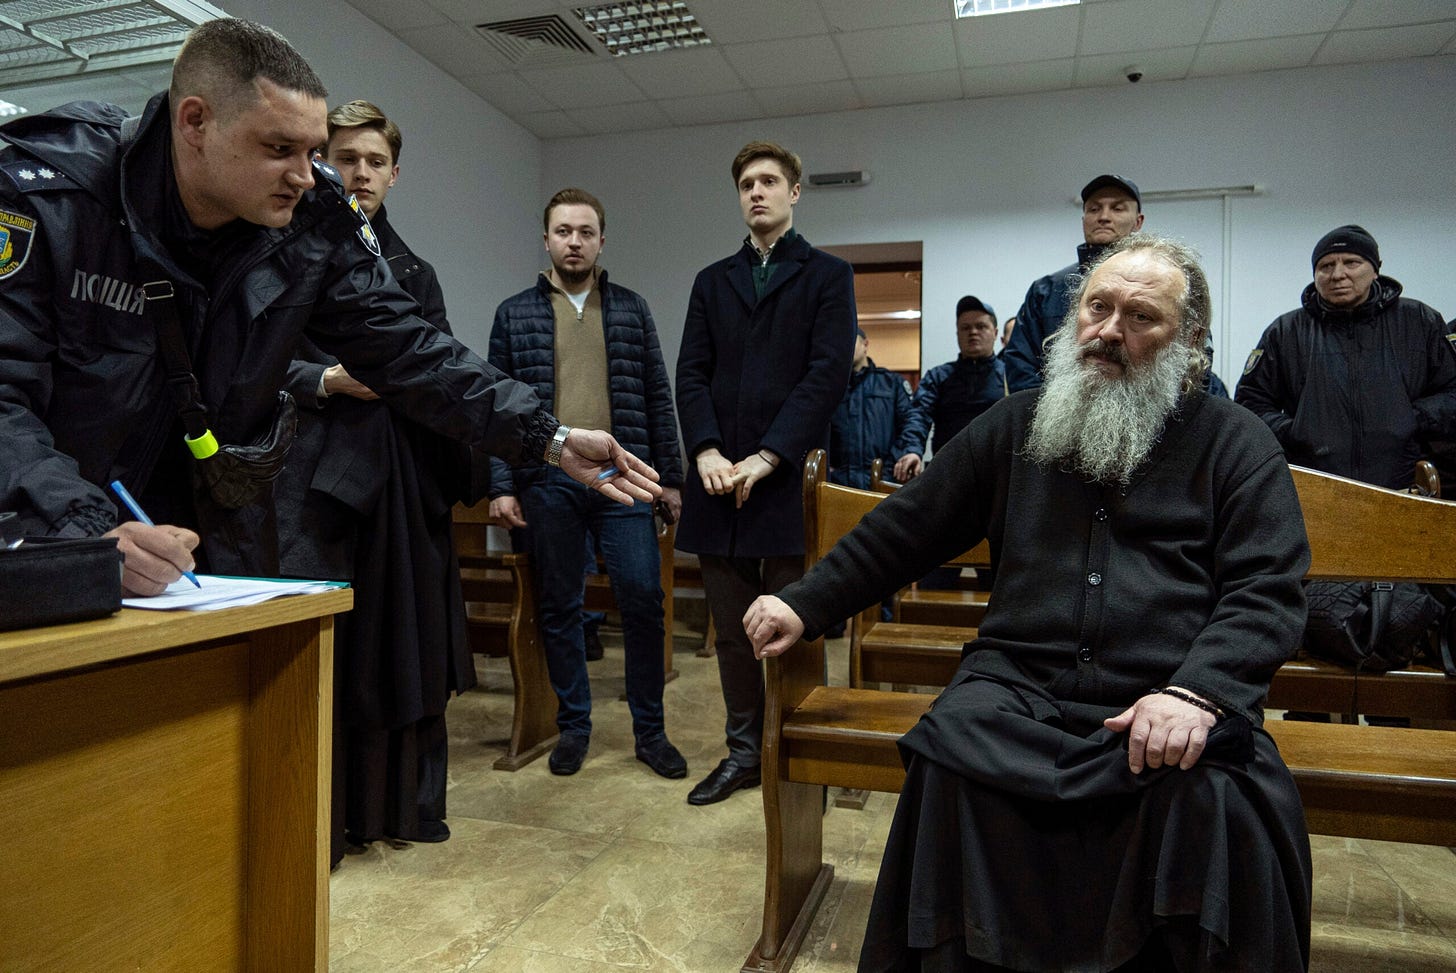 Ukrainian court puts an Orthodox leader under house arrest - WISH-TV ...